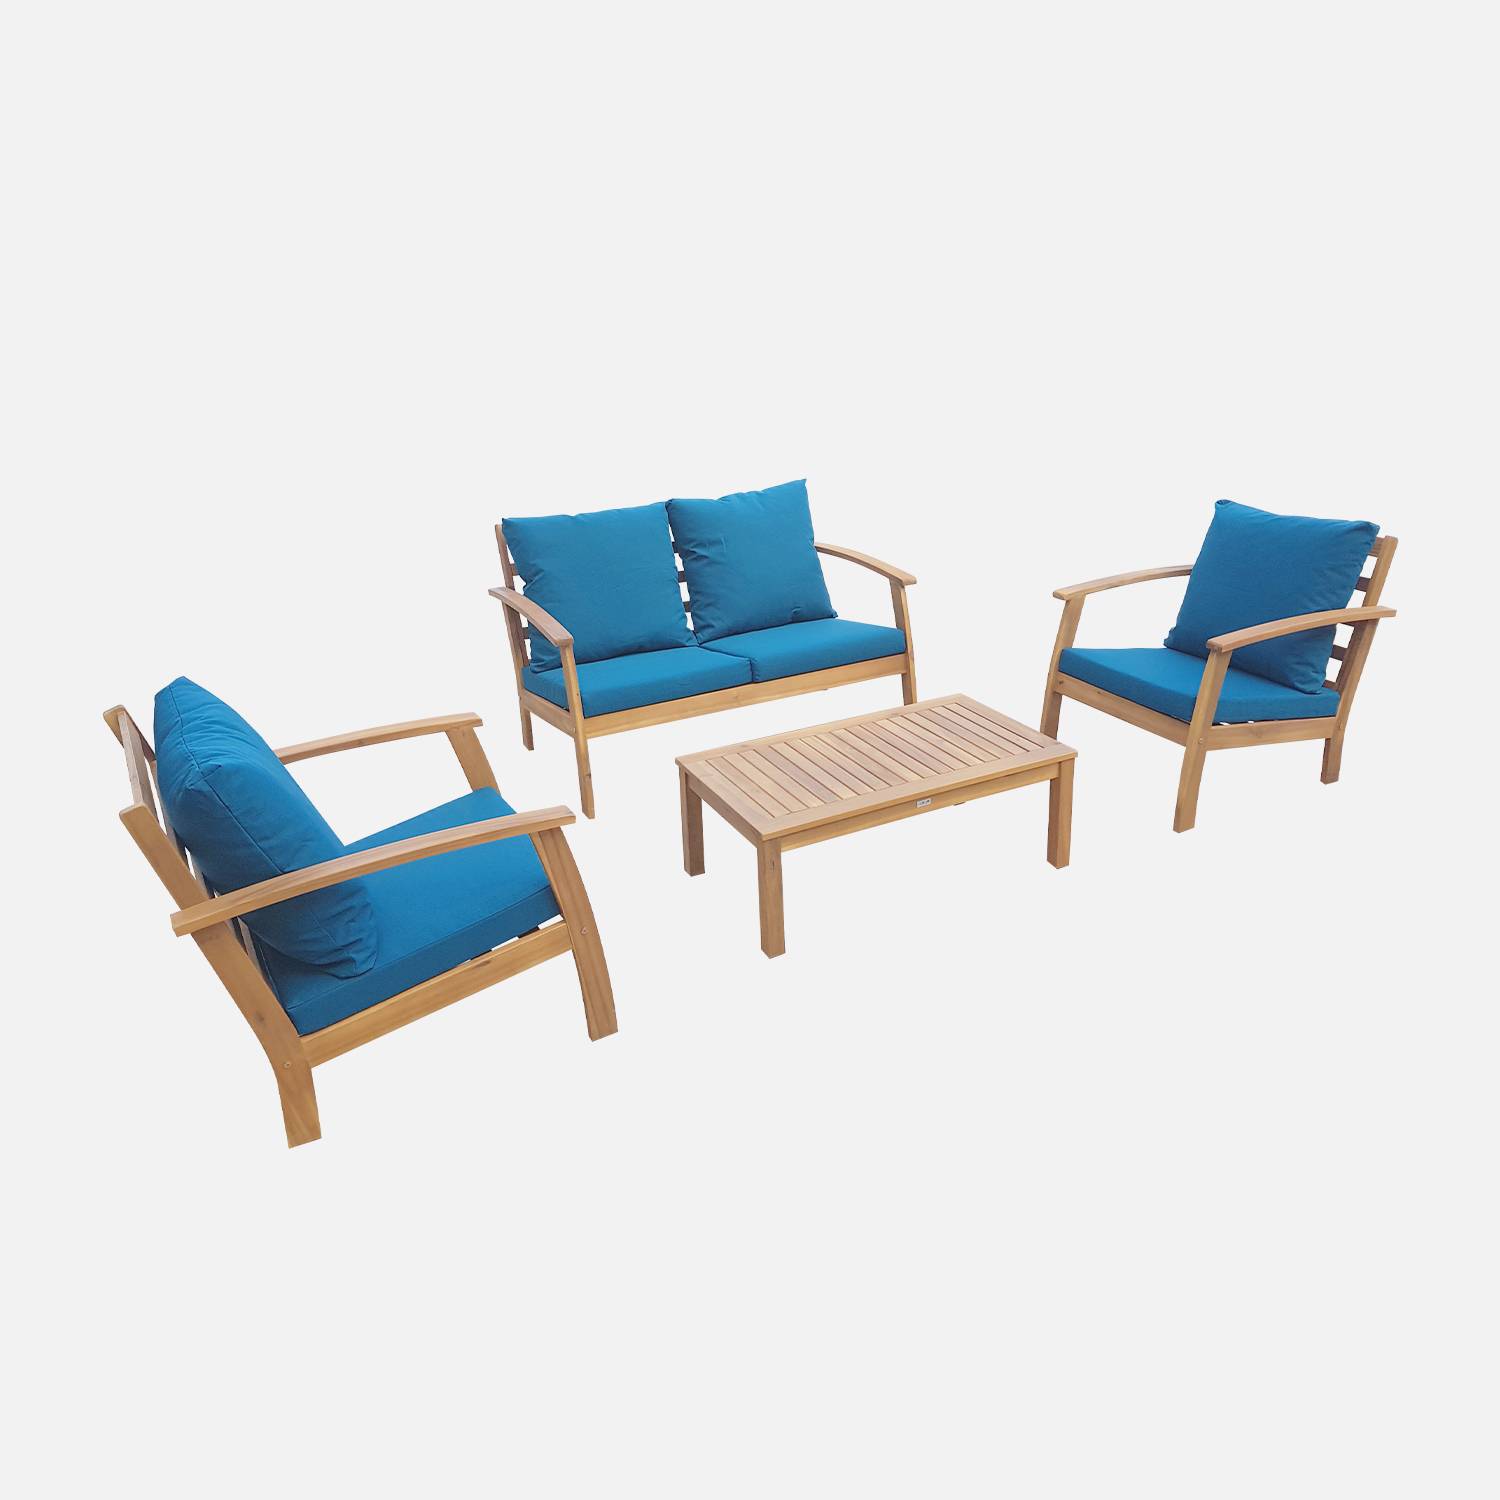 Salon de jardin en bois 4 places - Ushuaïa - Coussins bleu canard, canapé, fauteuils et table basse en acacia, design Photo4